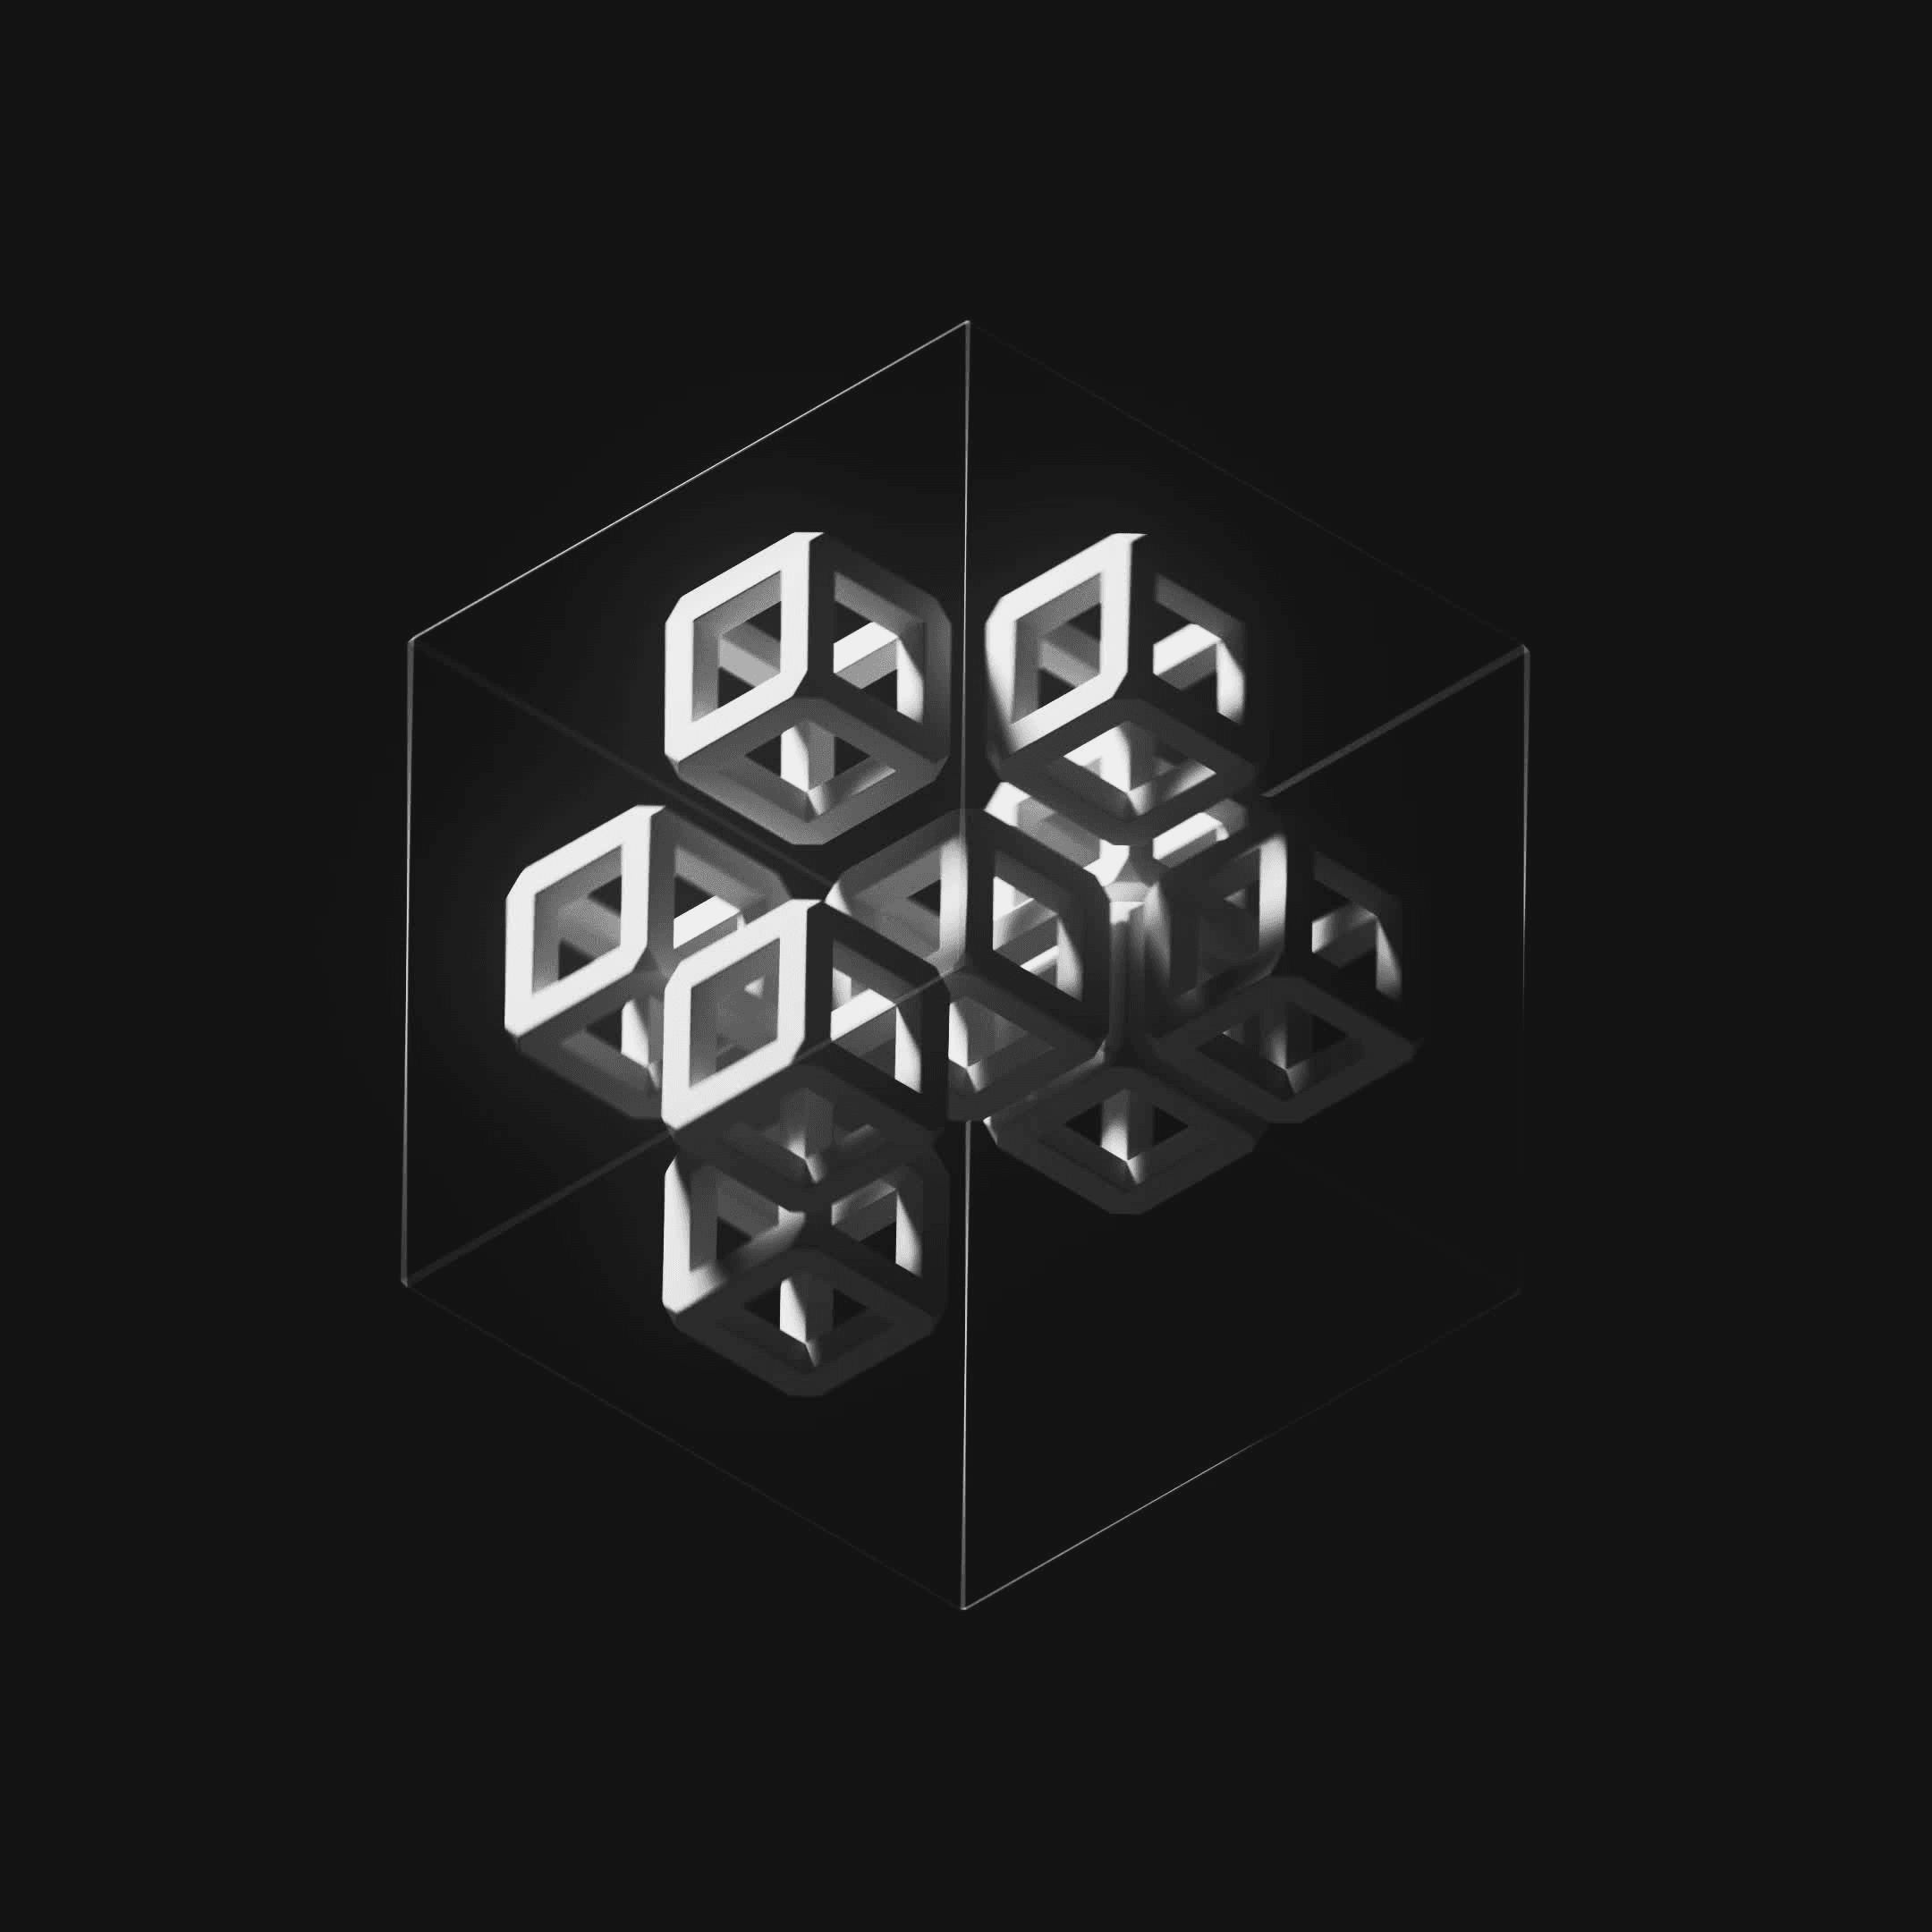 Ten Cubes #45/247